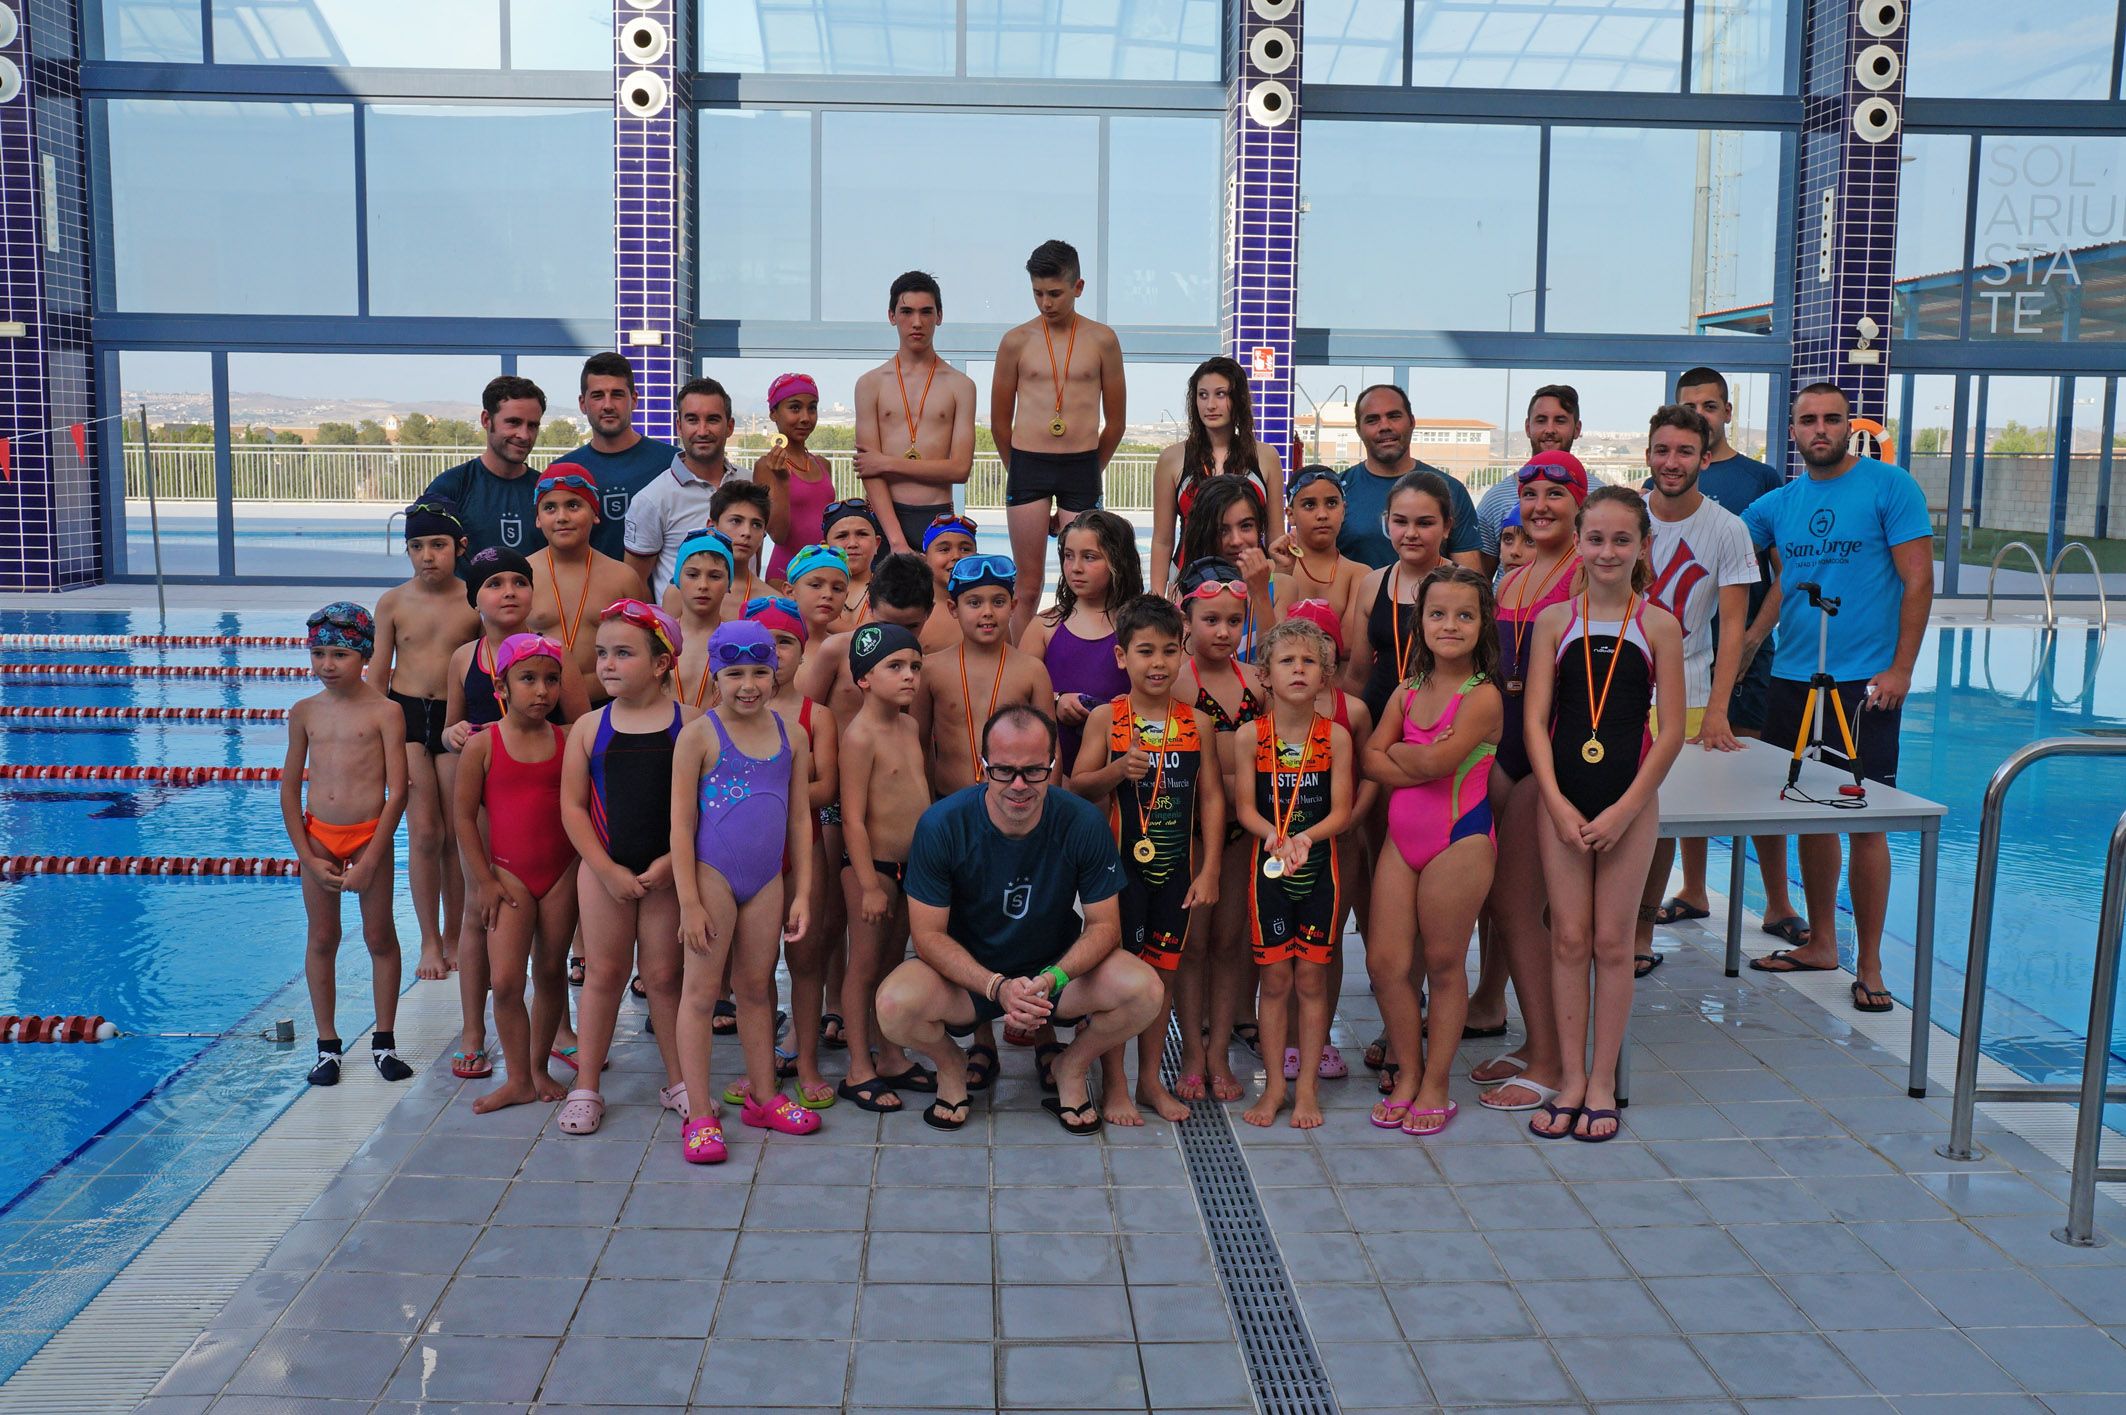 Fiesta de la natación infantil en el “State Sport Las Torres”6